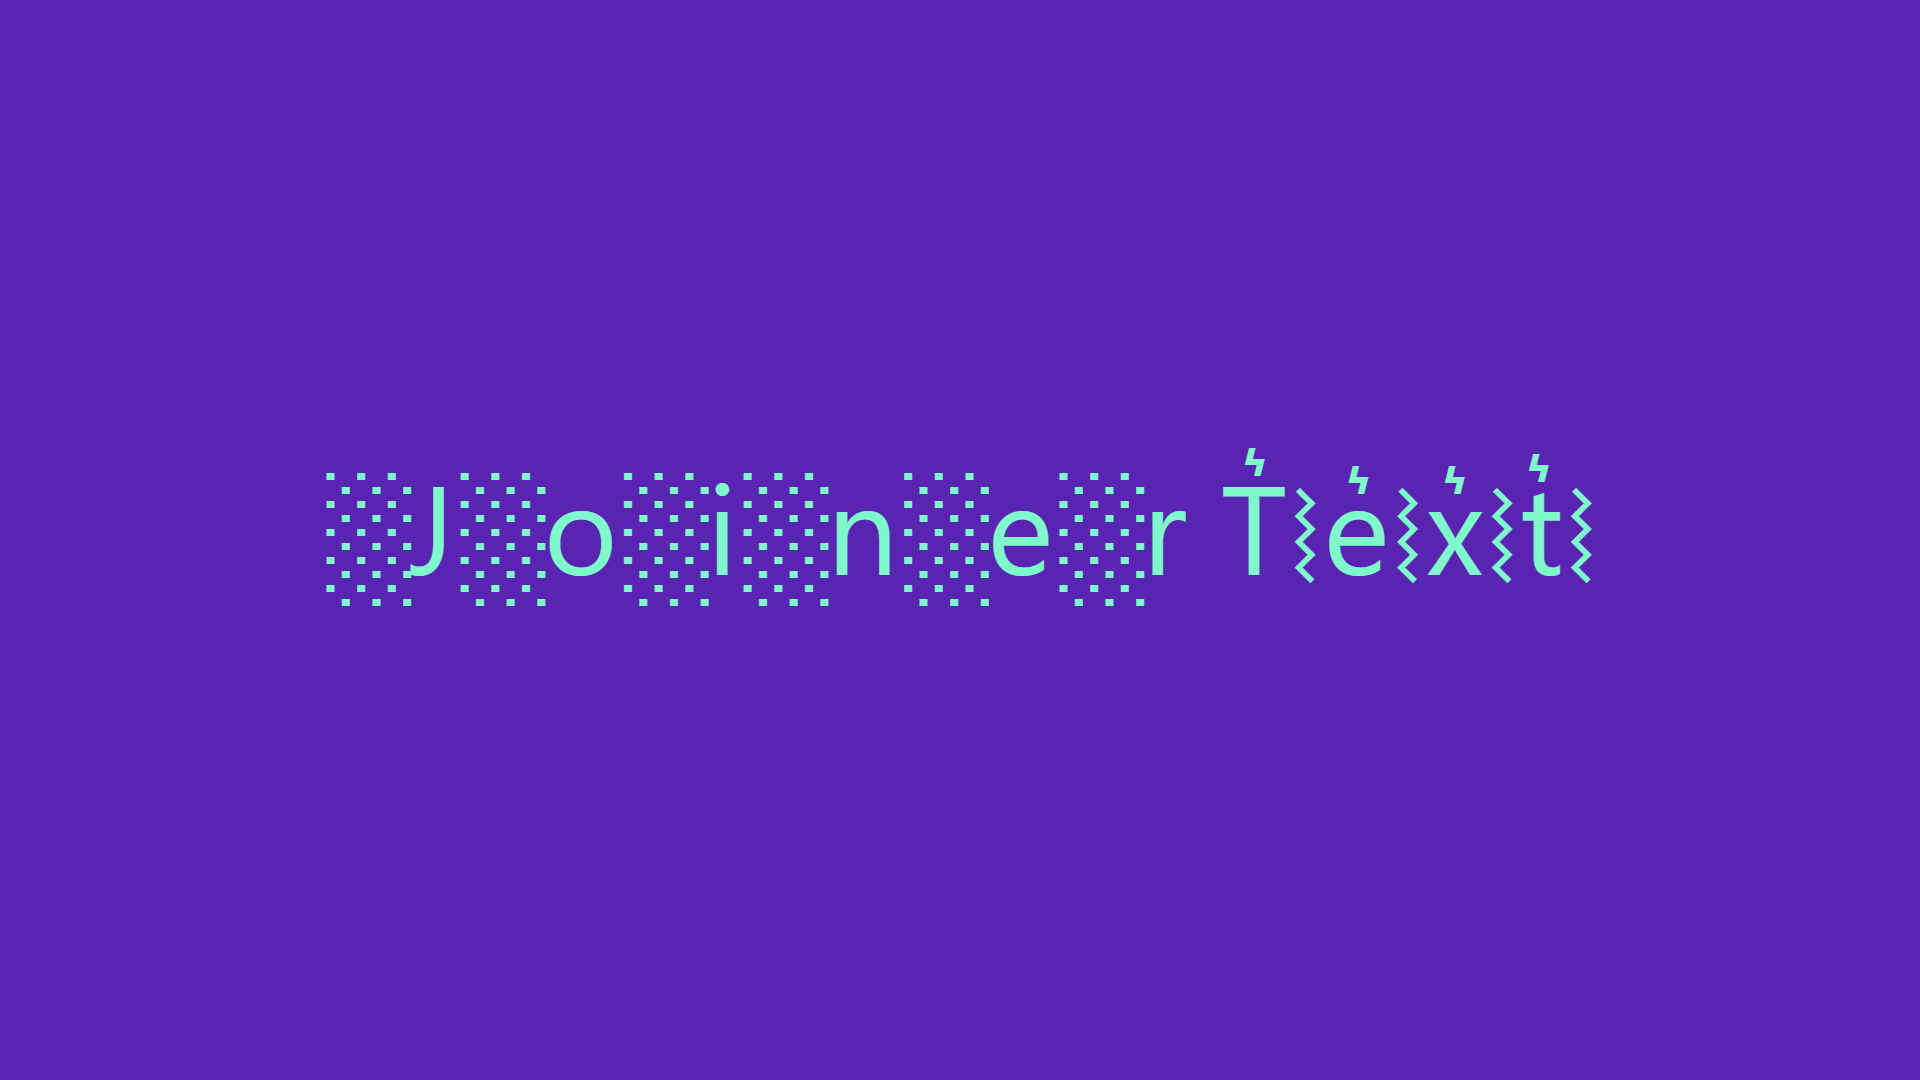 Joiner Text Generator